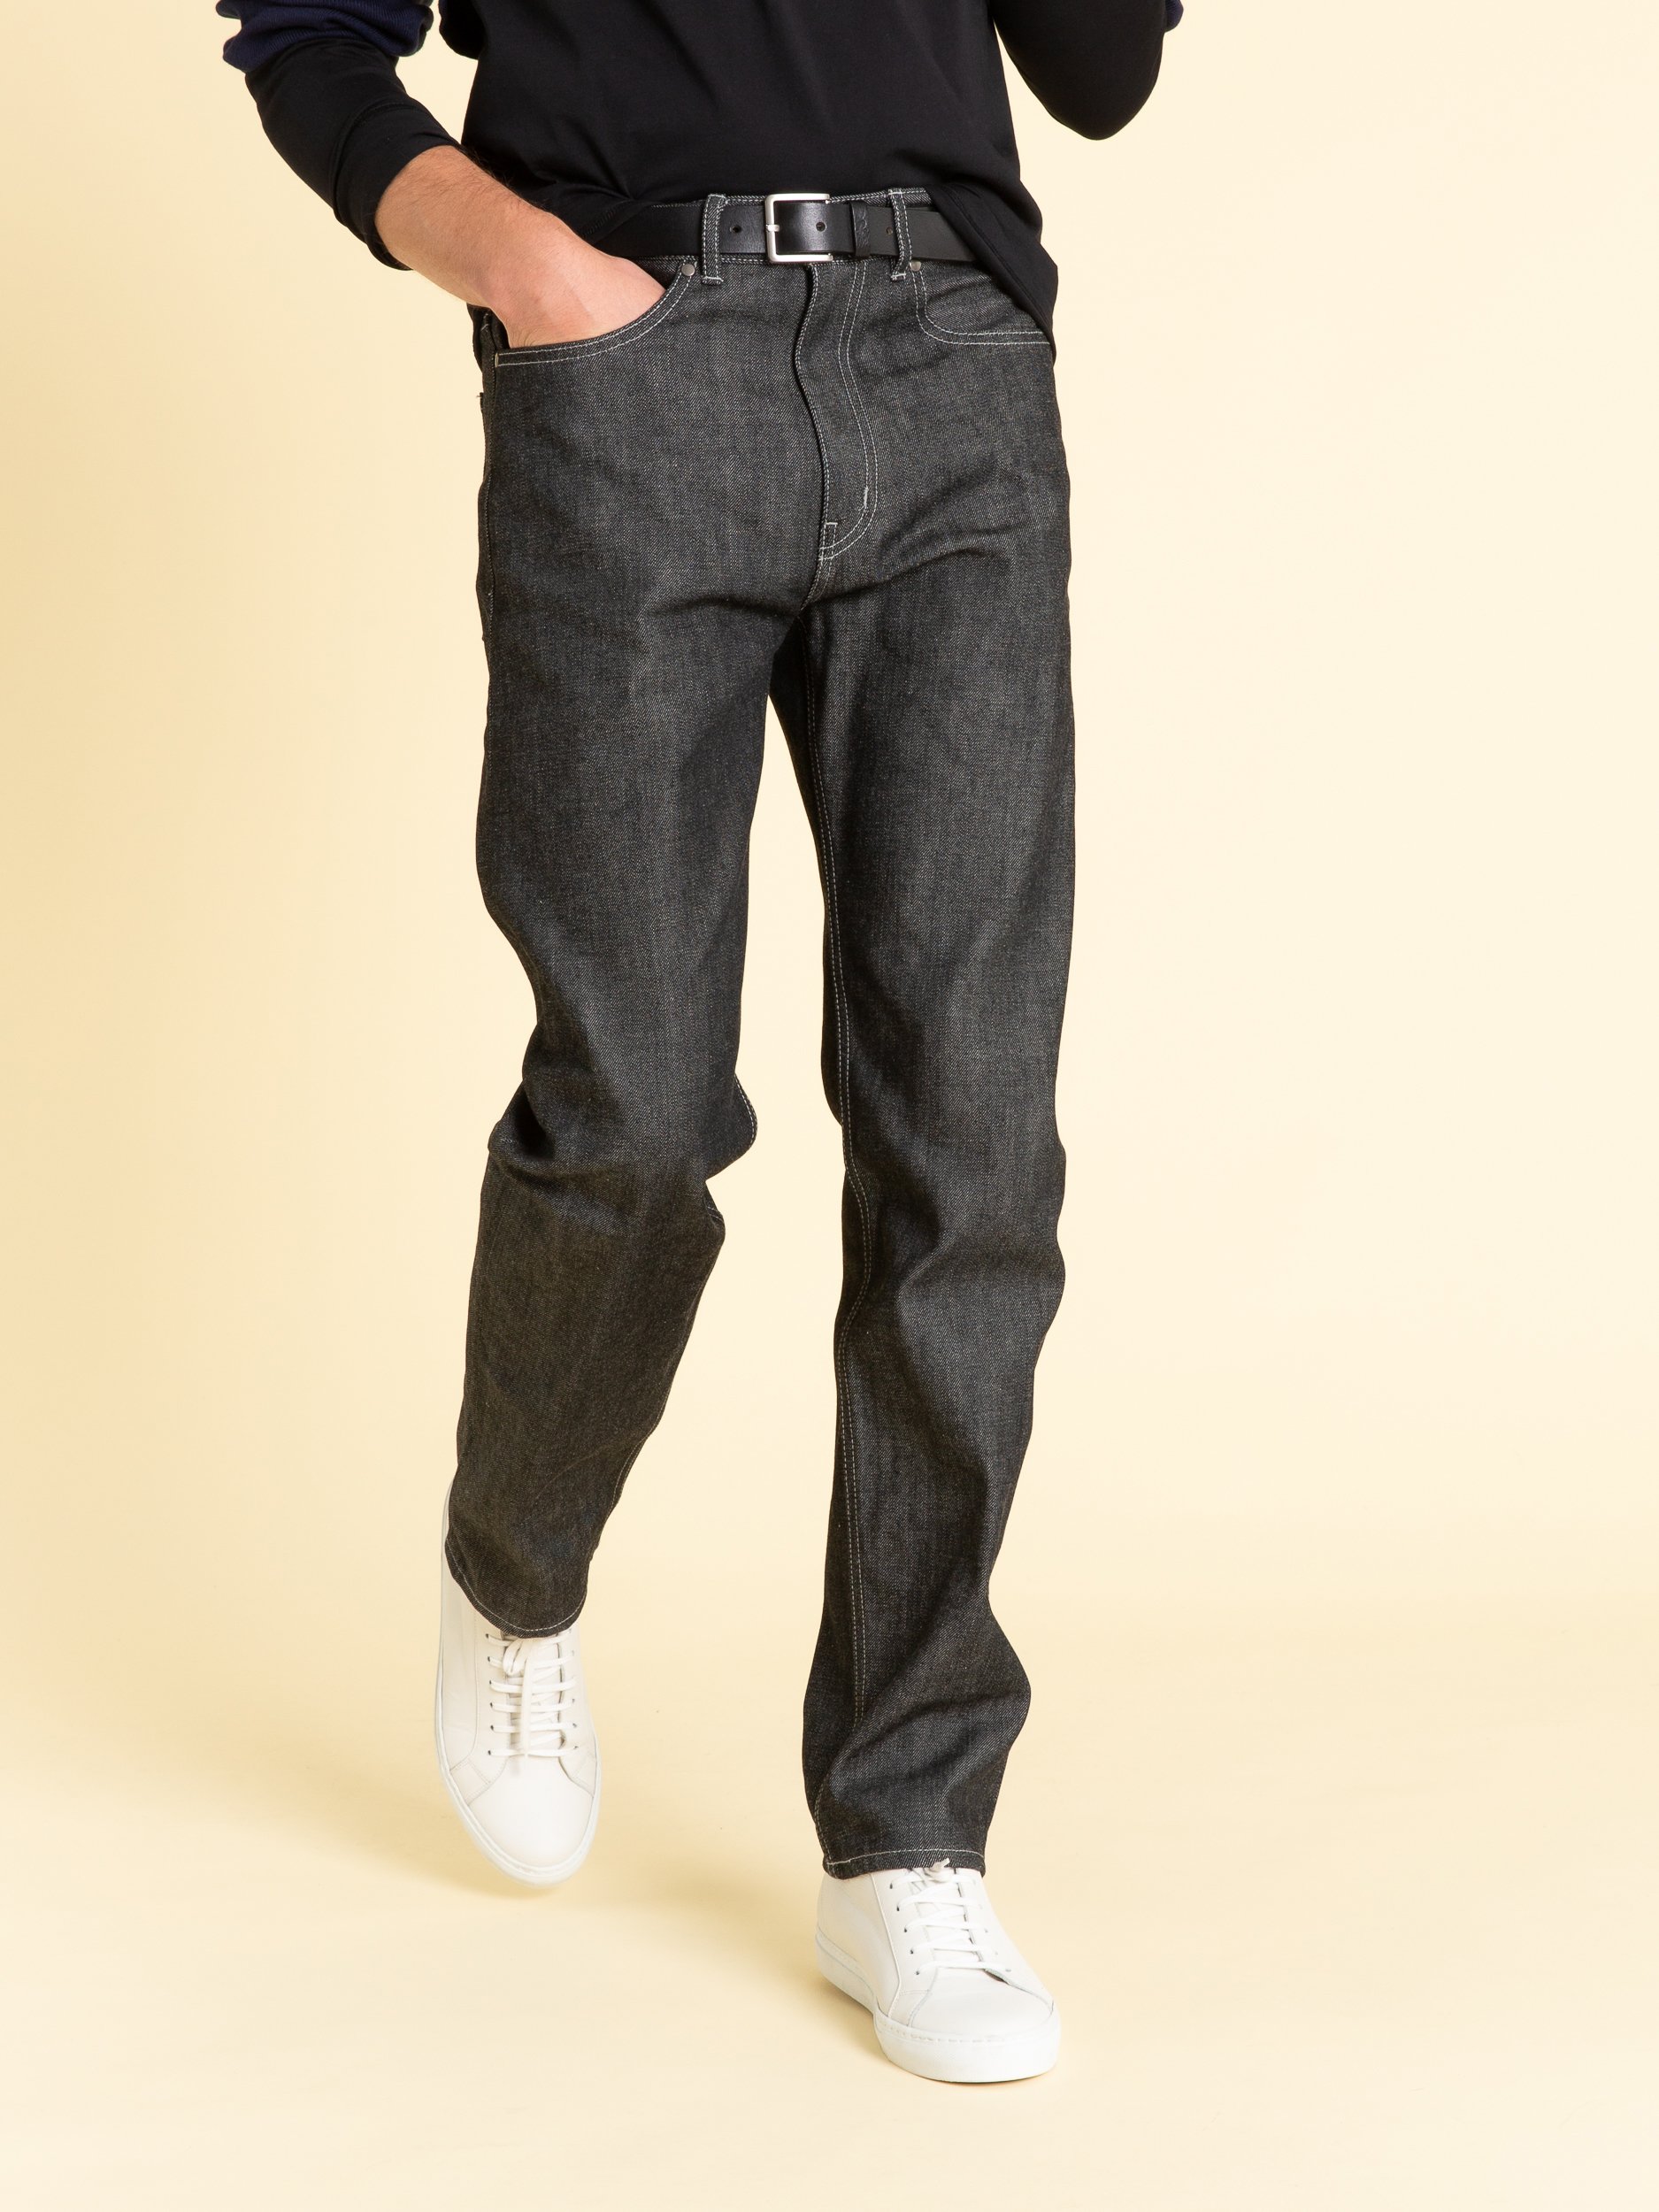 bevestigen Instrueren naar voren gebracht 1 men slim selvedge black jeans | agnès b.